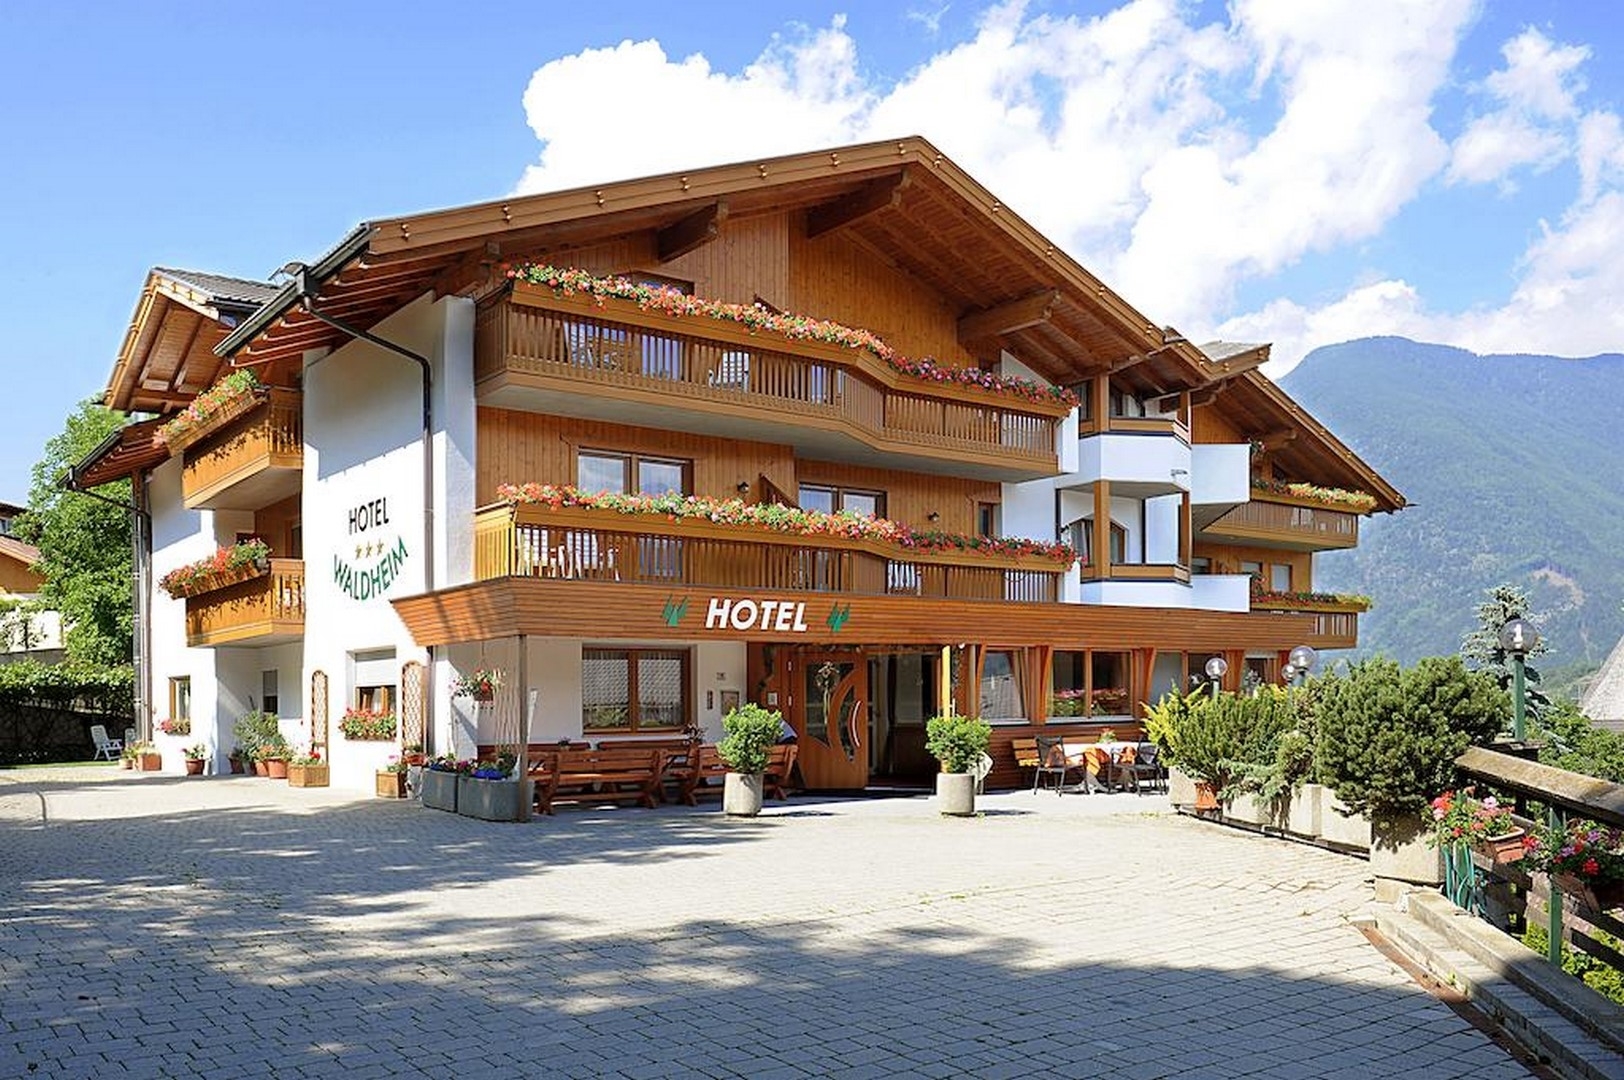 Hotel Waldheim - Natz-Schabs in Eisacktal